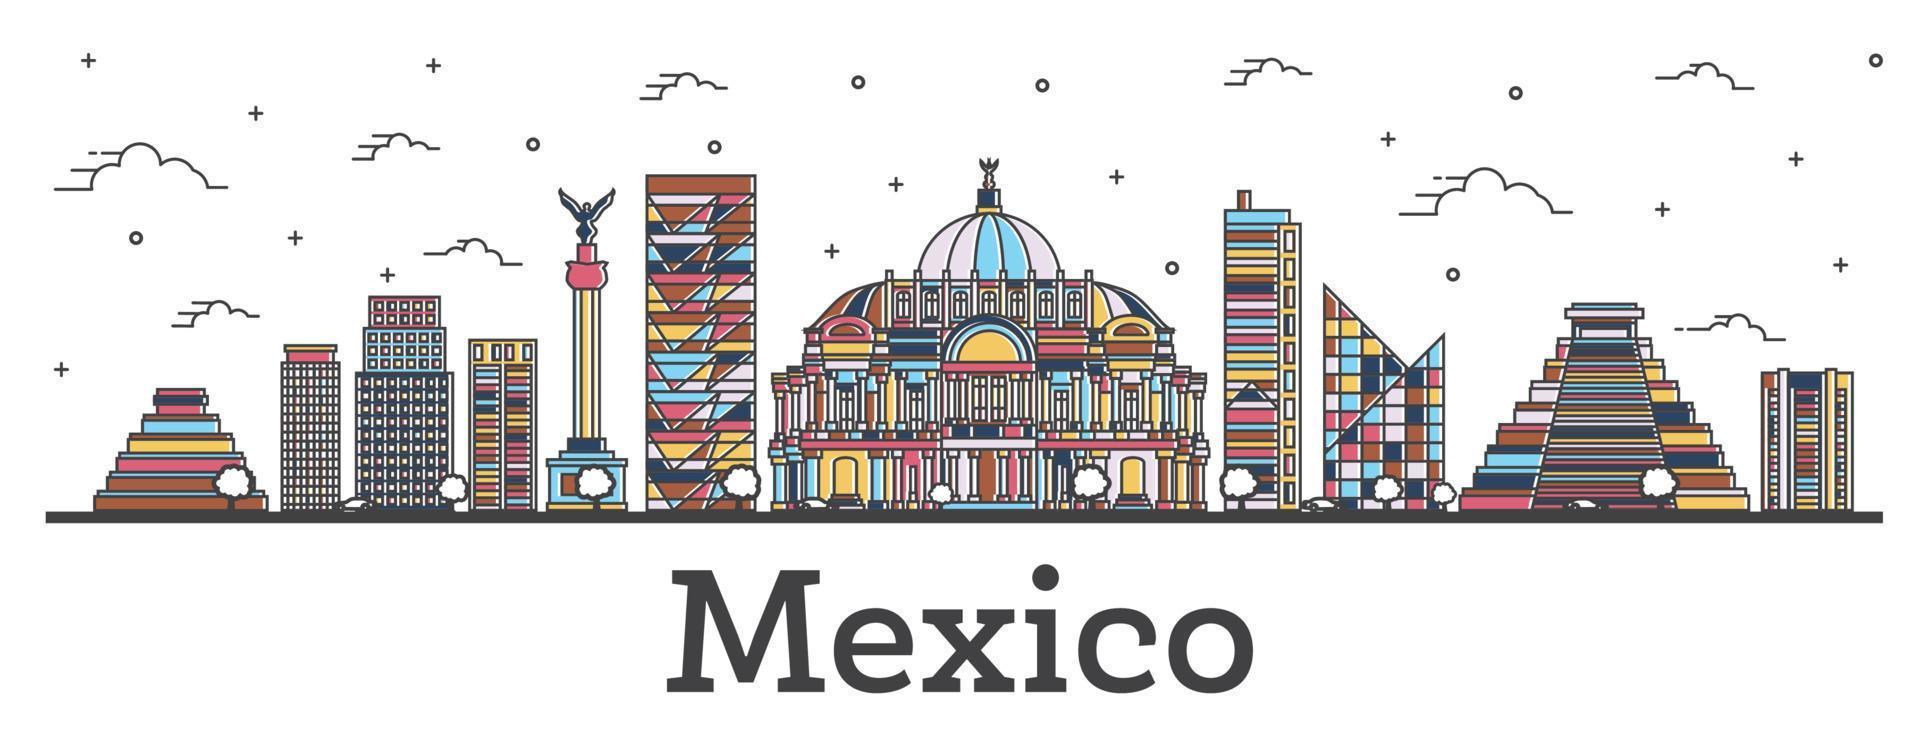 delineie o horizonte da cidade do méxico com edifícios coloridos isolados em branco. vetor